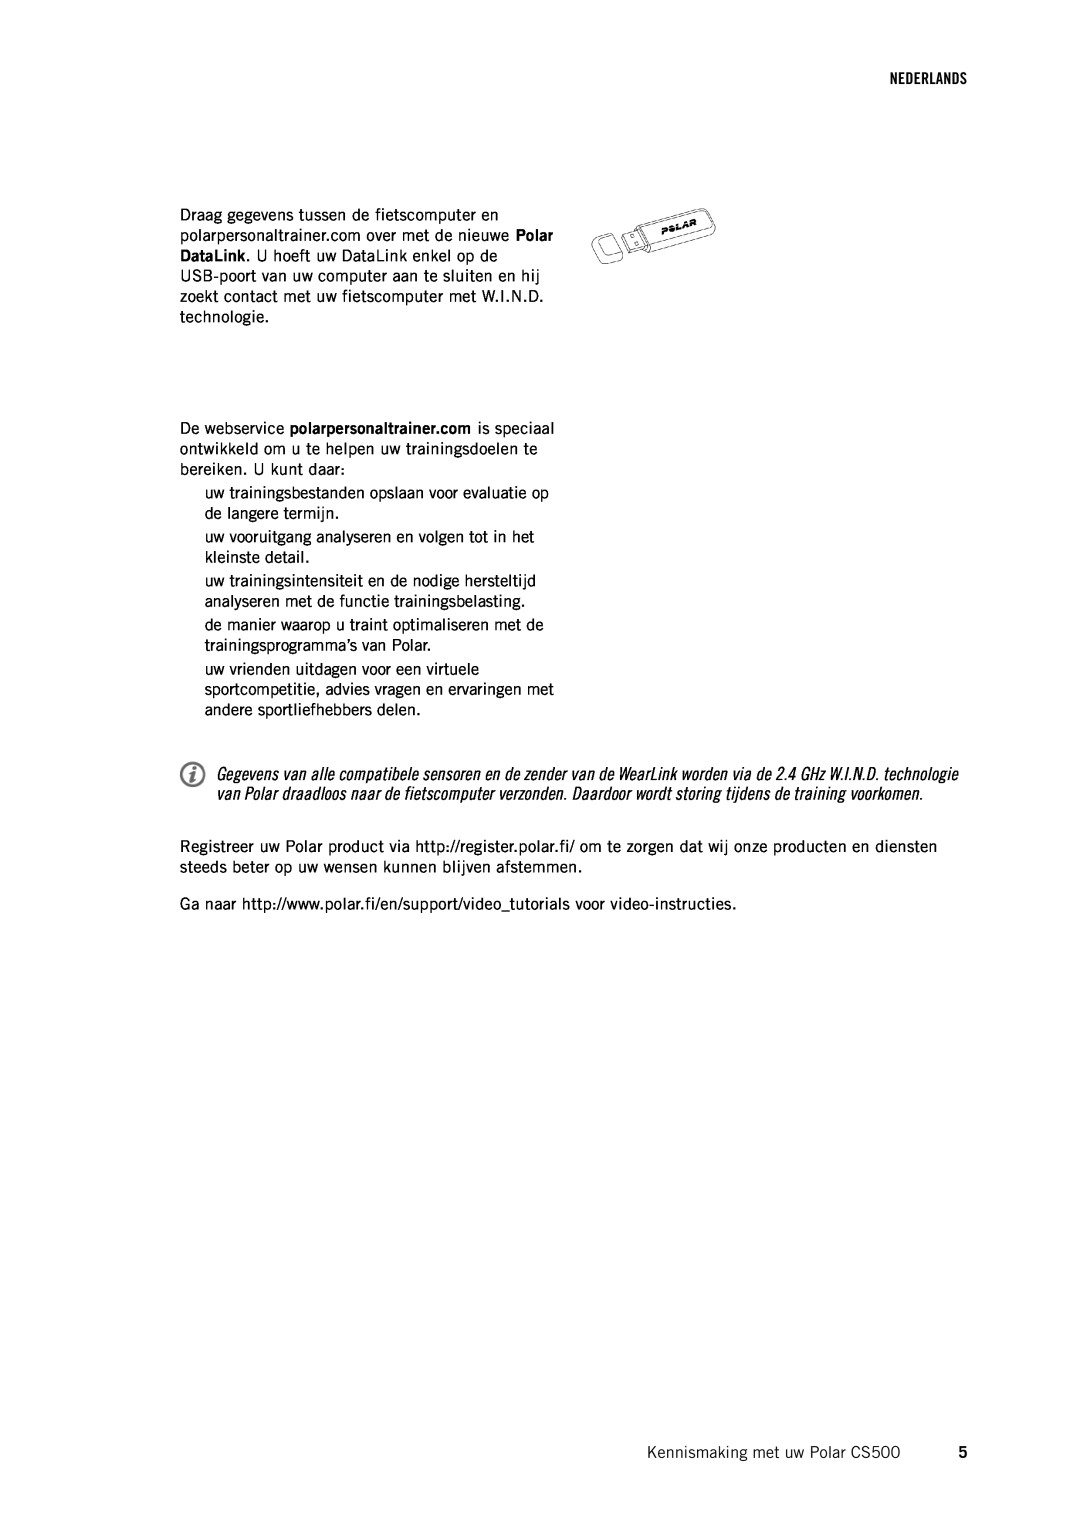 Polar CS500 manual Nederlands, uw trainingsbestanden opslaan voor evaluatie op de langere termijn 